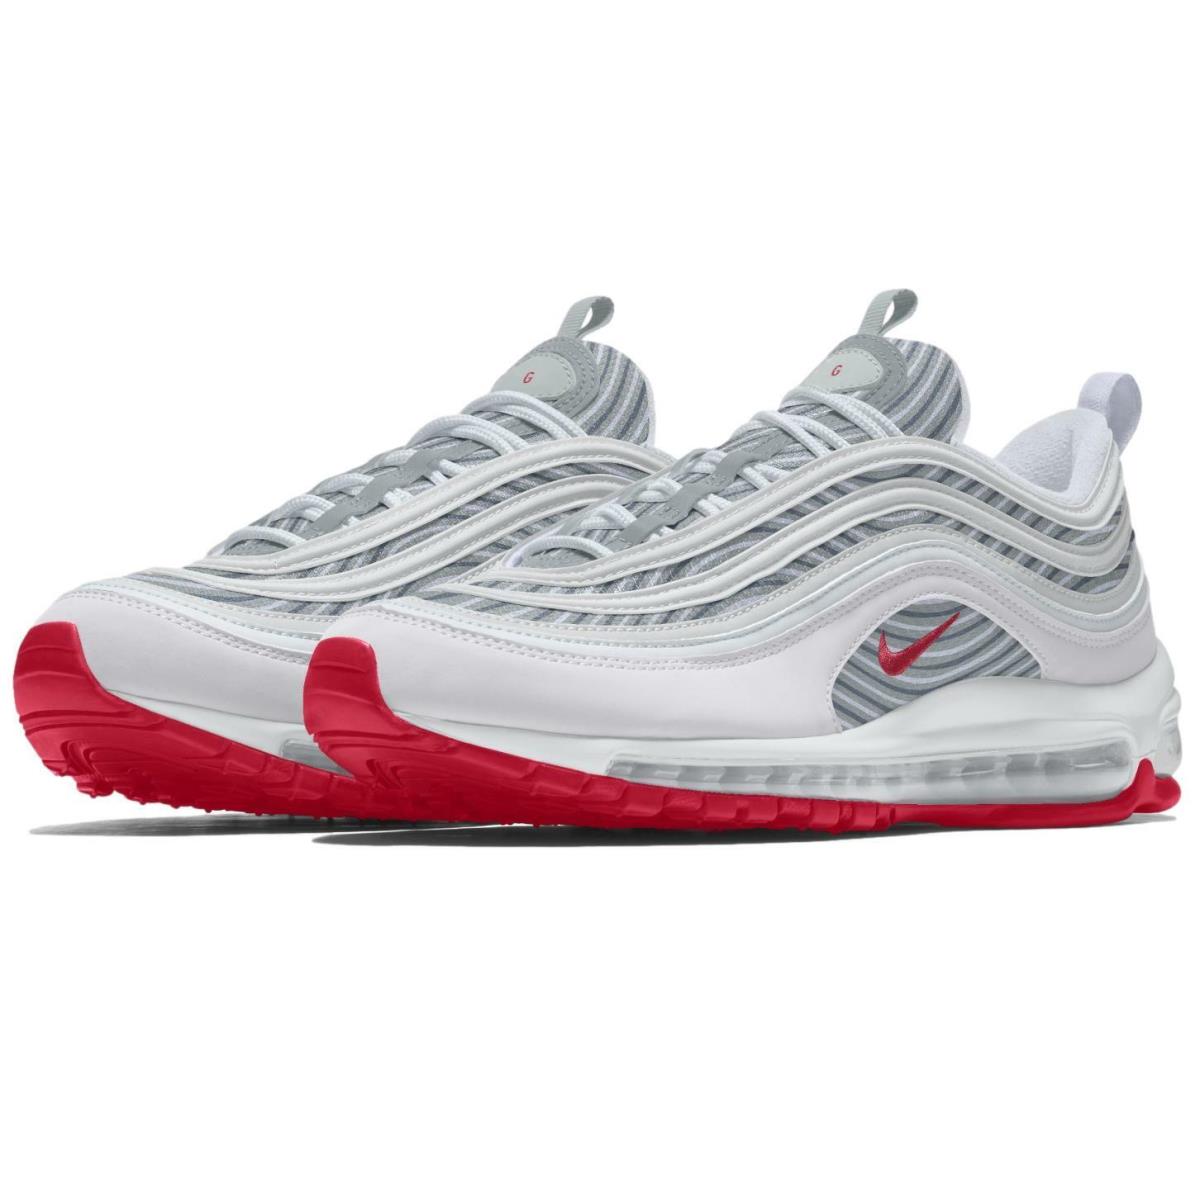 Nike ID By You Women`s Air Max 97 Grey Fog/lt Fusion Red Shoes DJ3180-991 - White/Grey Fog/Lt Fusion Red